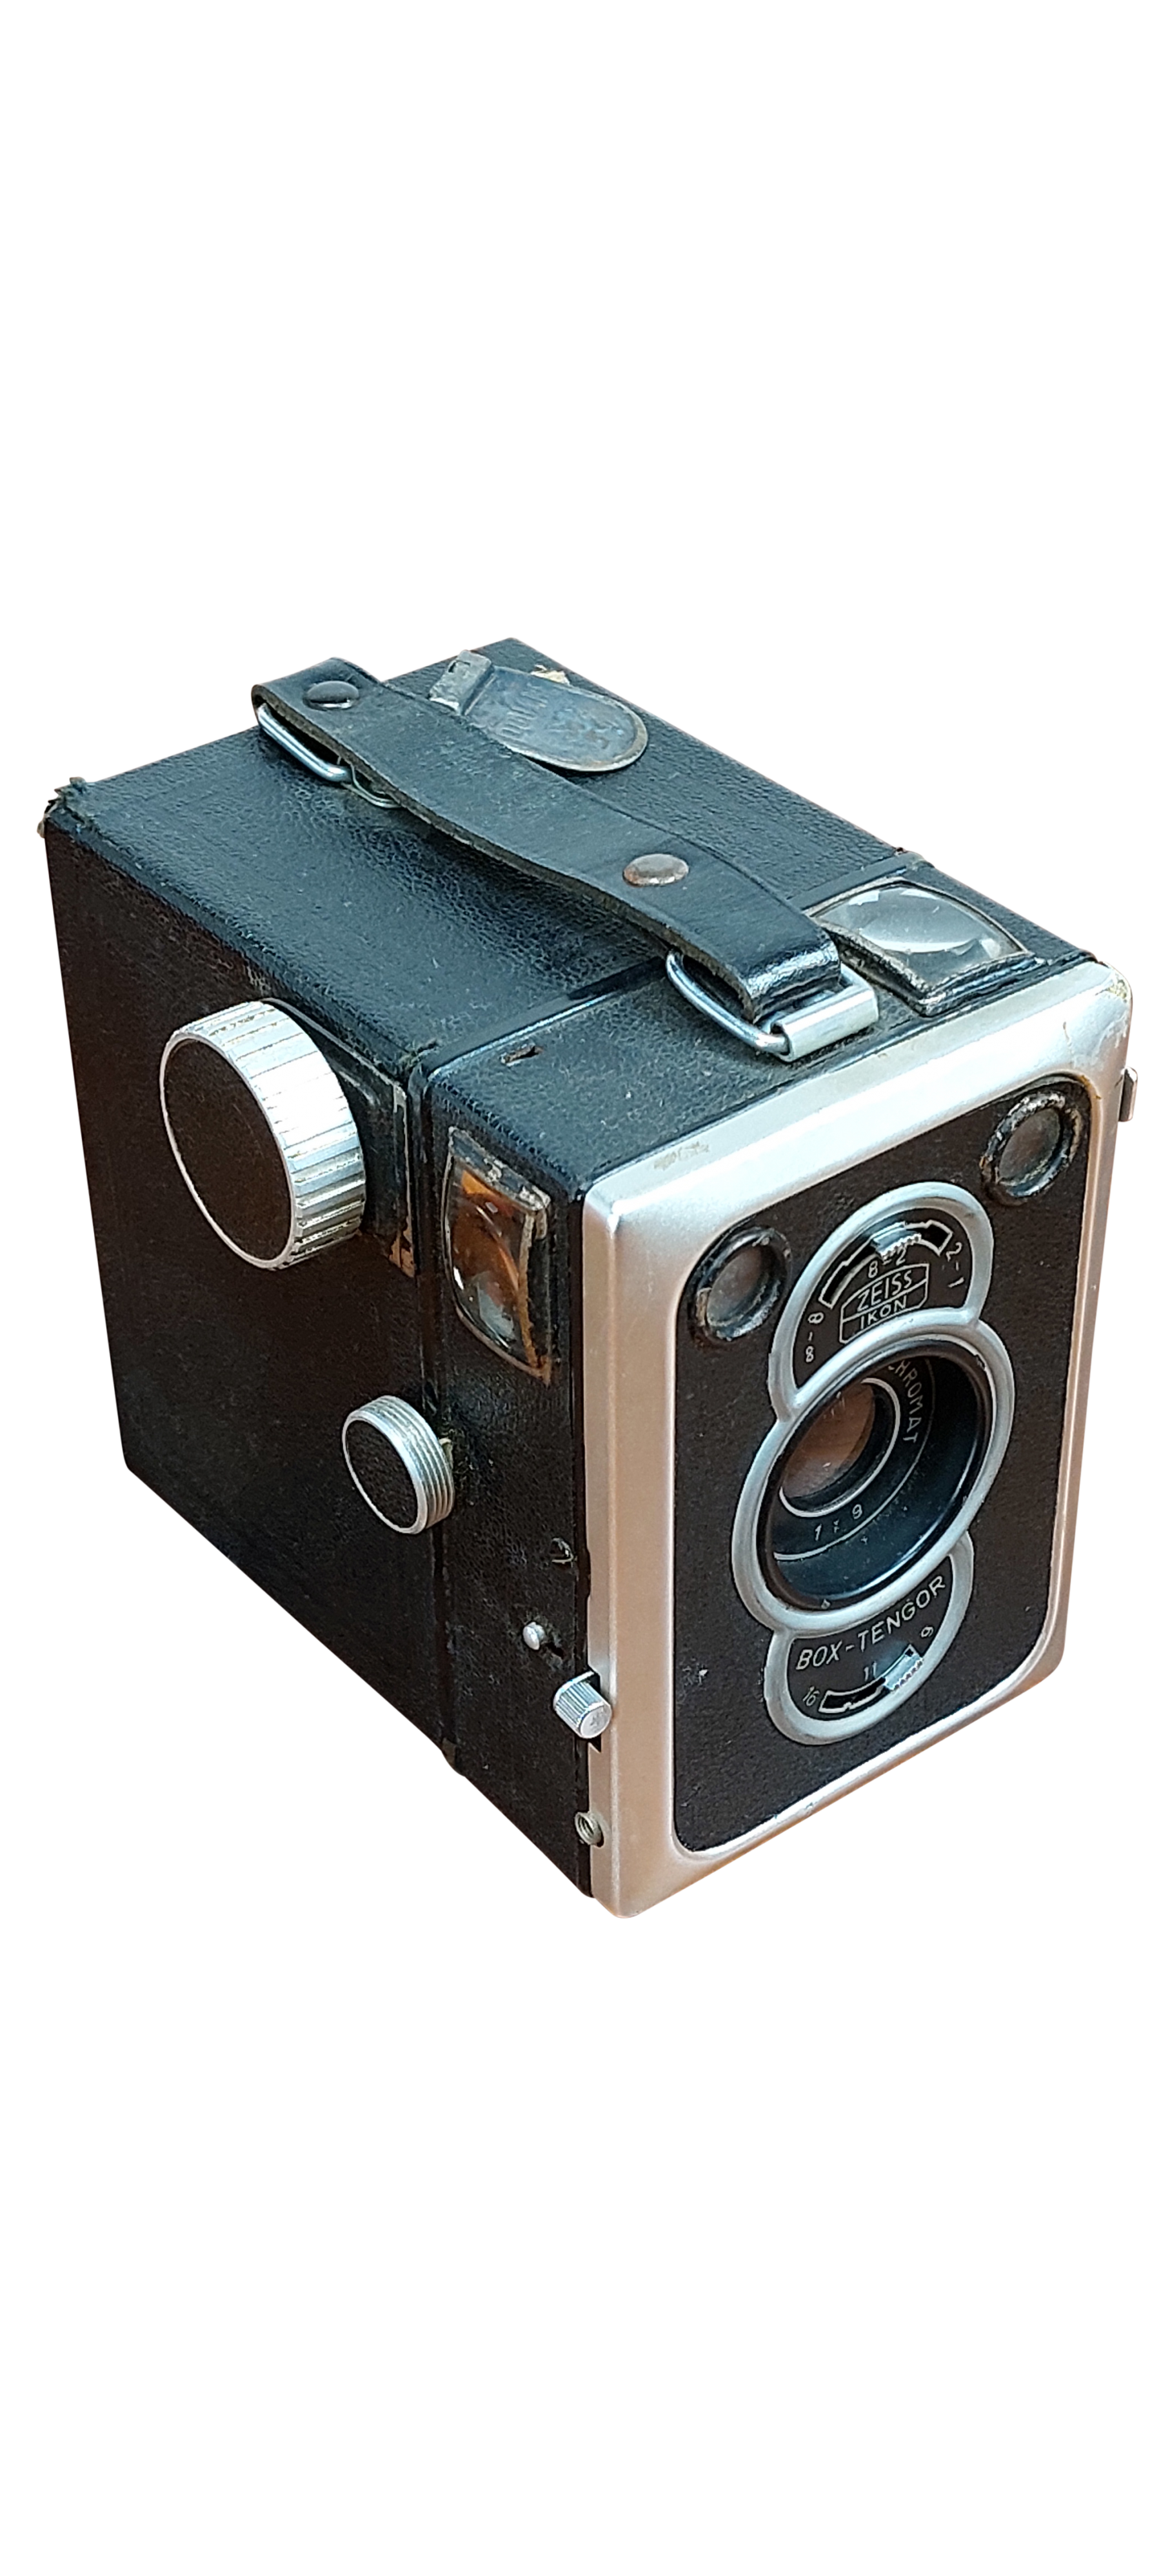 L'appareil photo rétro - N/A - Kiabi - 21.49€